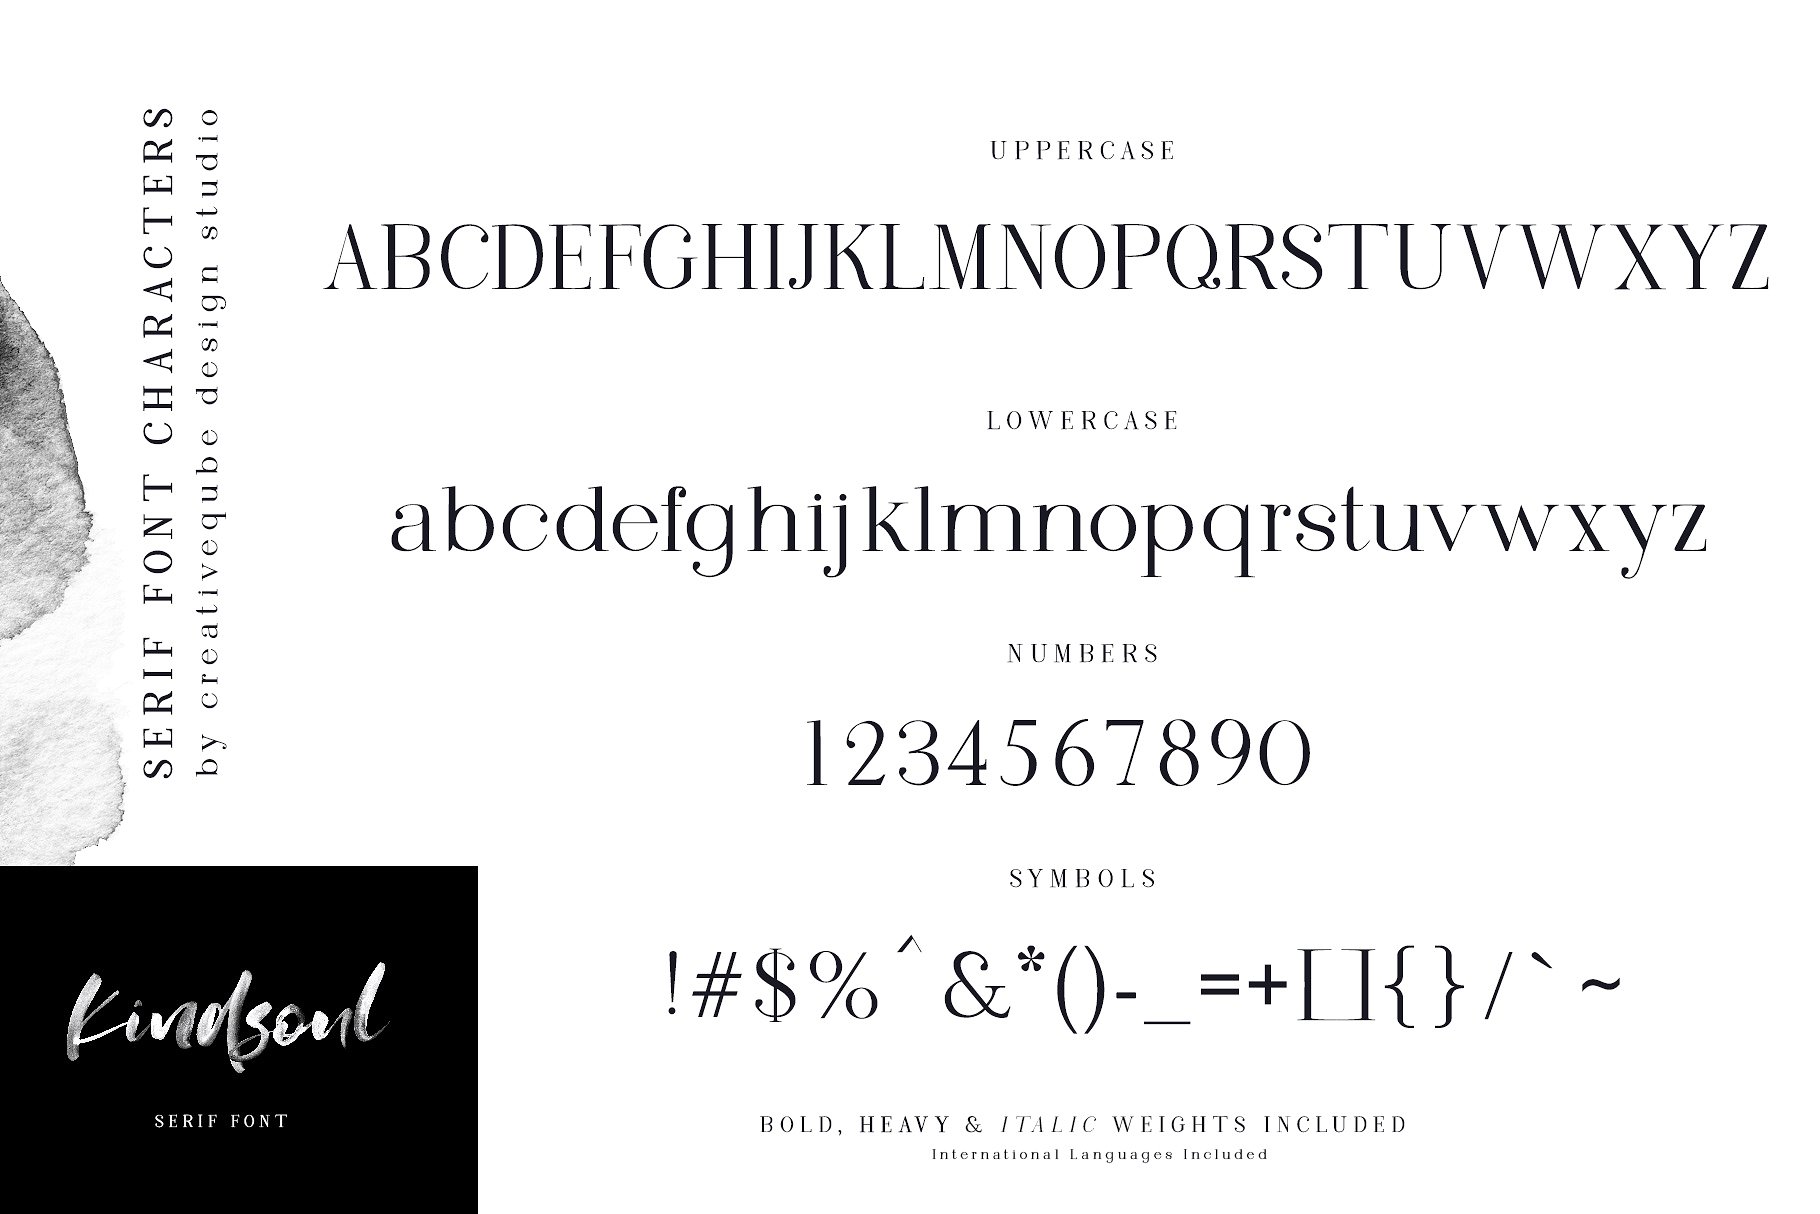 手绘水彩SVG字体&平滑衬线英文字体 KindSoul SVG Script & Serif Font Duo插图(10)